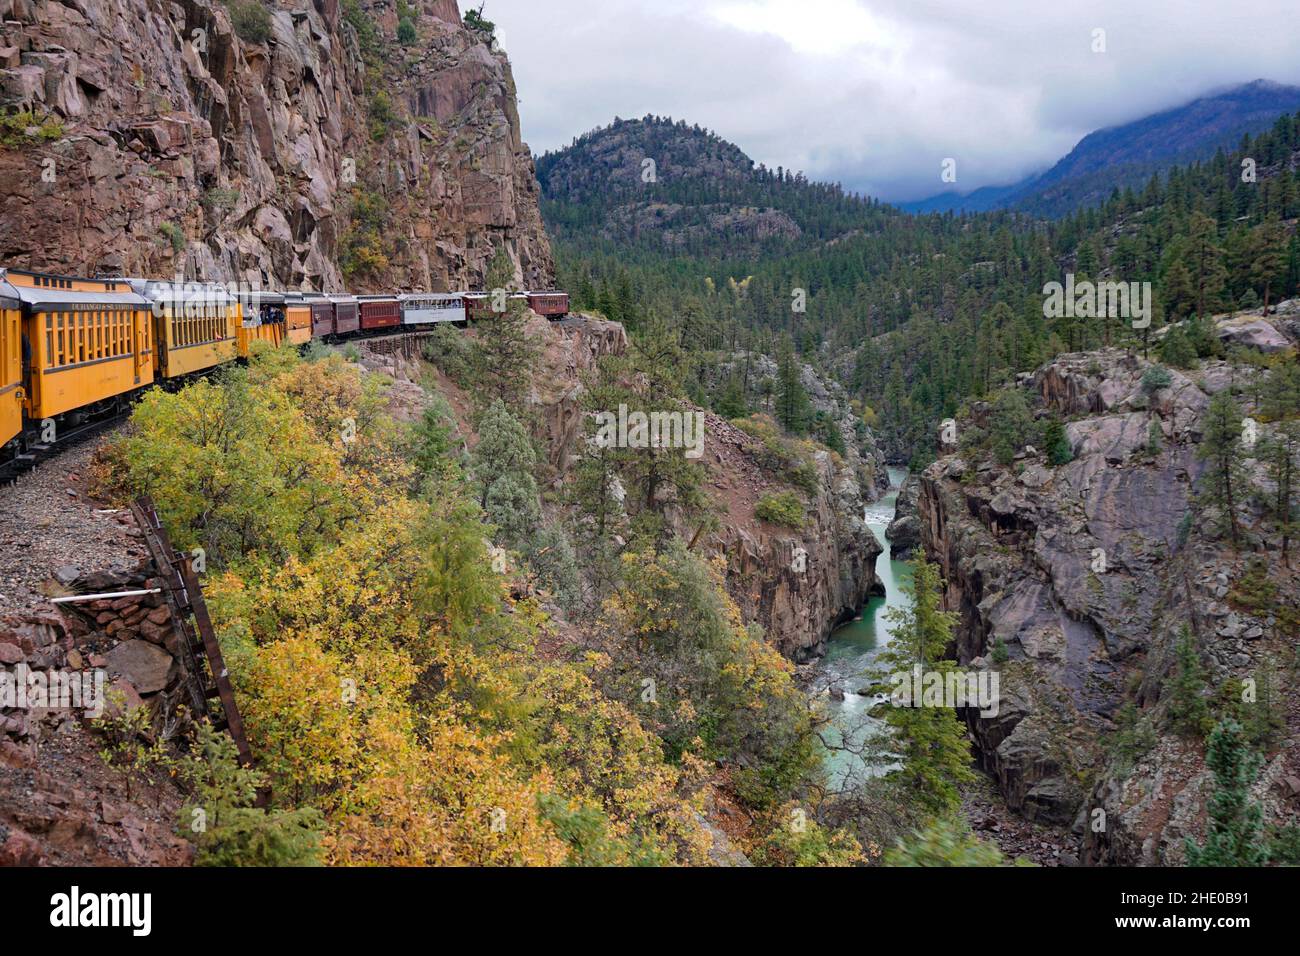 Chemin de fer à voie étroite Durango et Silverton voyageant le long du flanc de la montagne et au-dessus de la rivière Animas. Banque D'Images